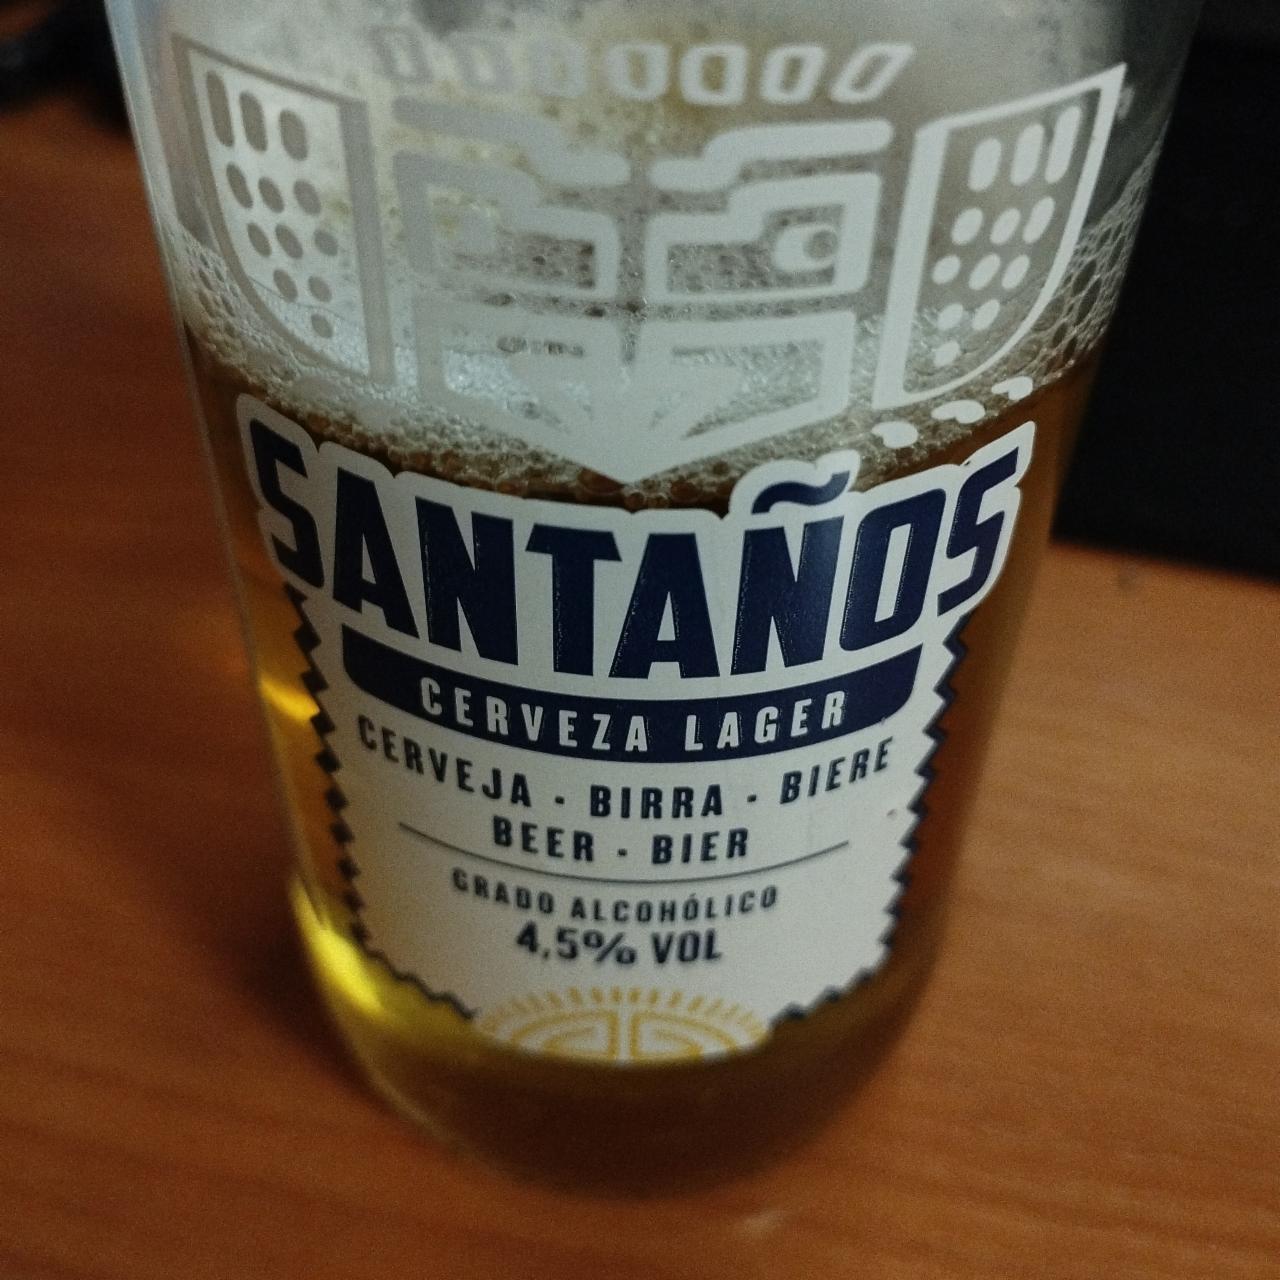 Фото - Пиво Lager 4.5% Santanos